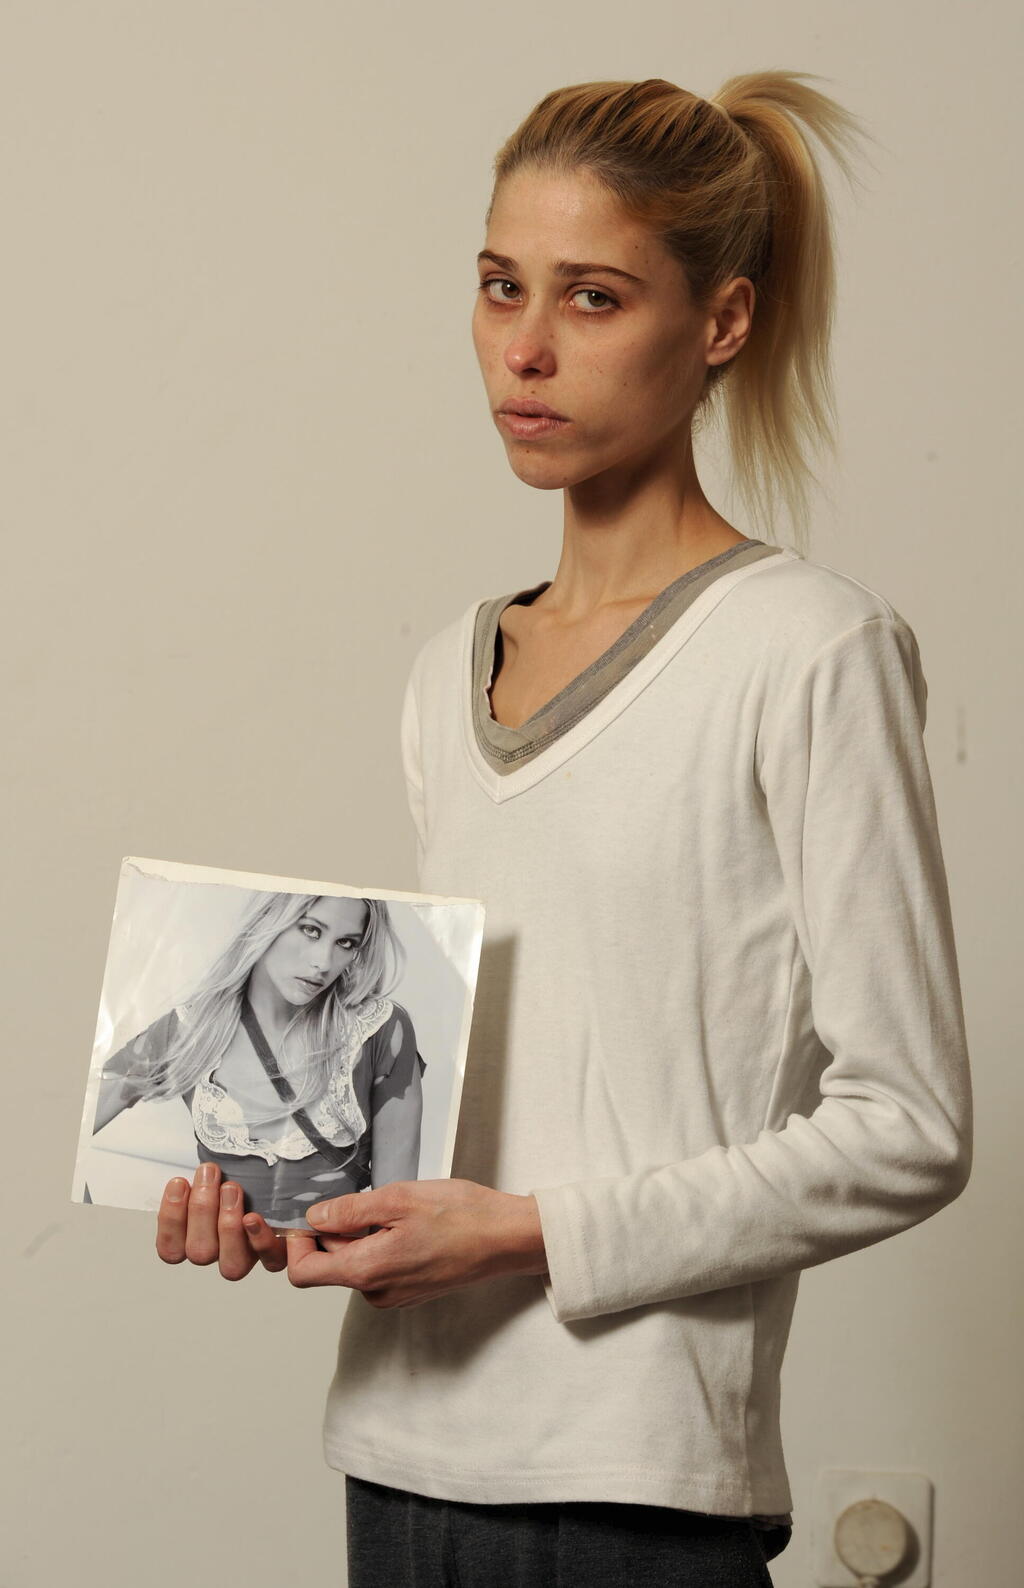 קארין באומן עם תמונה שלה מתקופת הדוגמנות